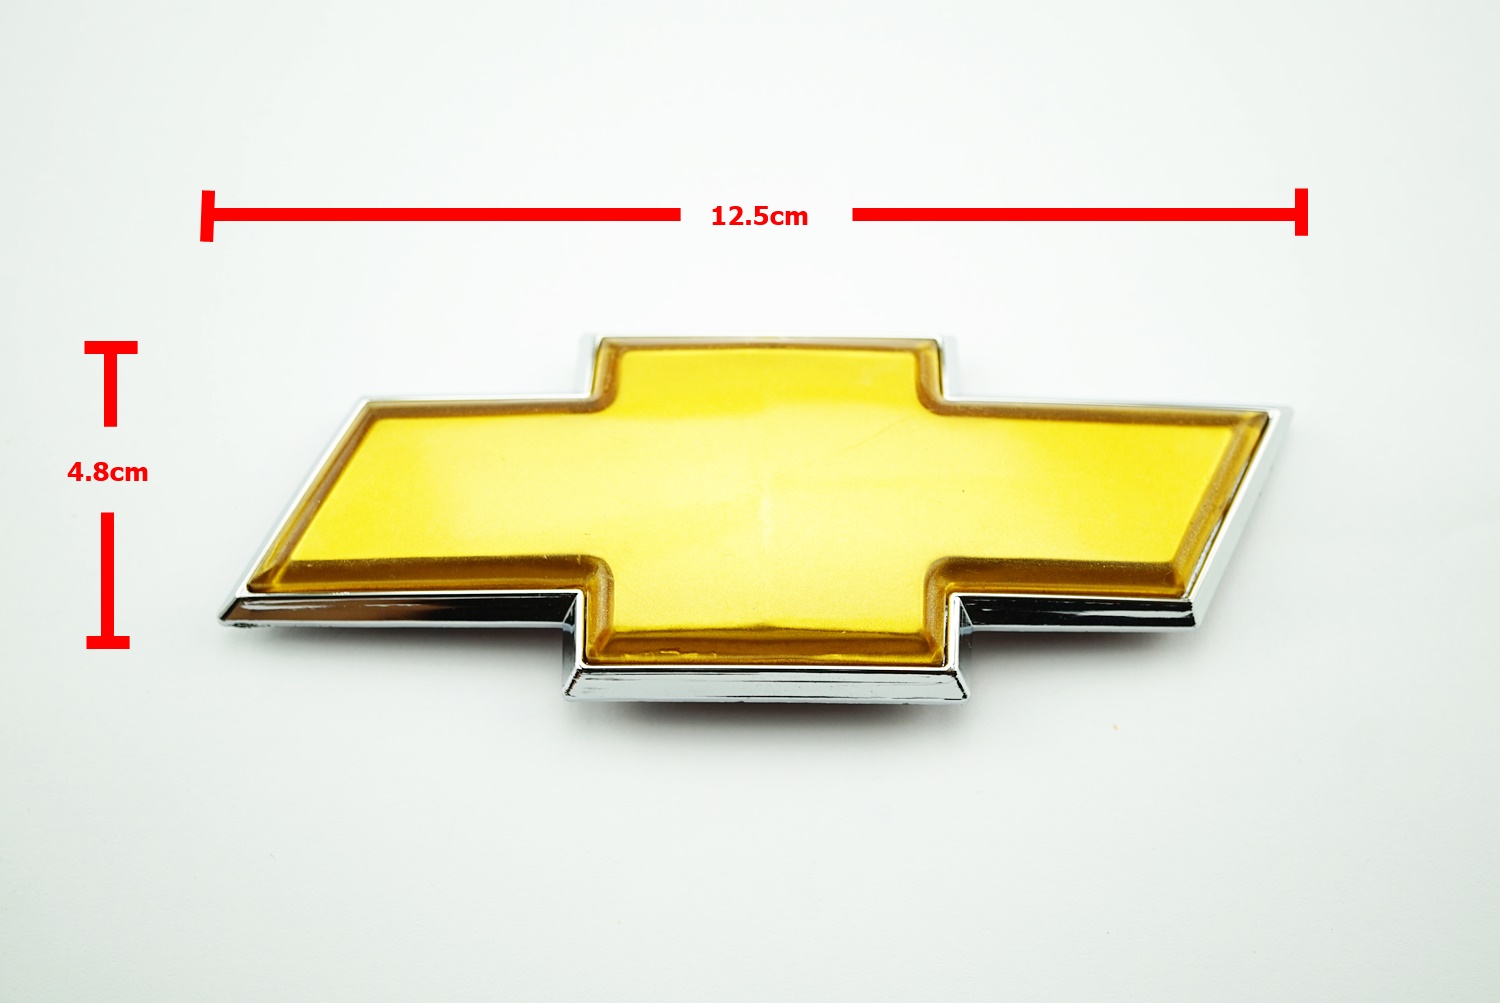 ป้ายโลโก้พลาสติกสีทองขอบเงิน Chevrolet  ขนาด 12.5x4.8cm ติดตั้งด้วยเทปกาวสองหน้าด้านหลัง